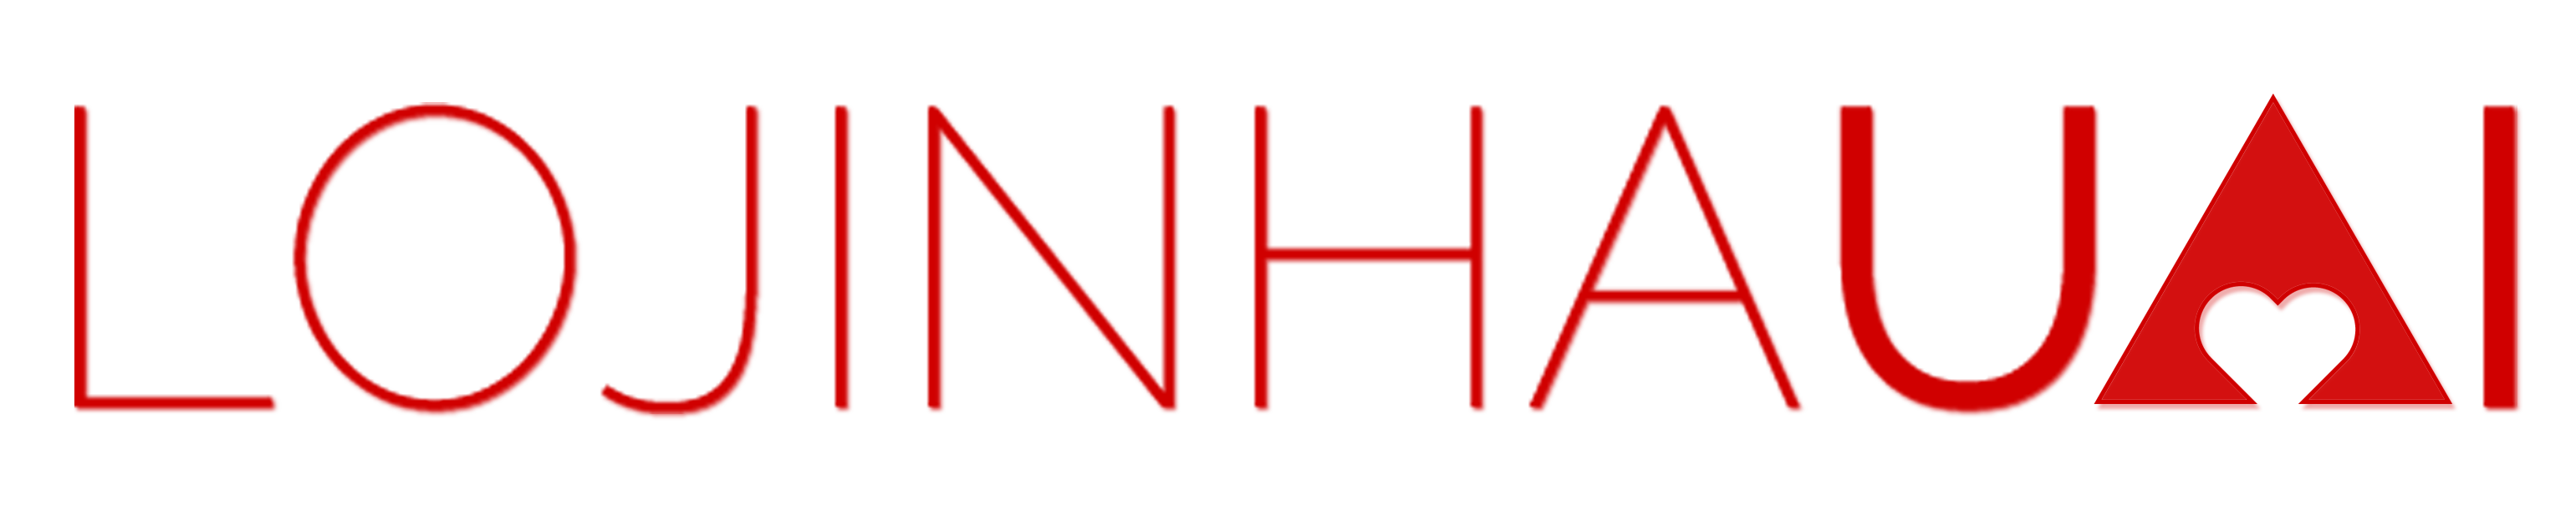 Logomarca da nossa loja online de produtos mineiros Lojinha Uai